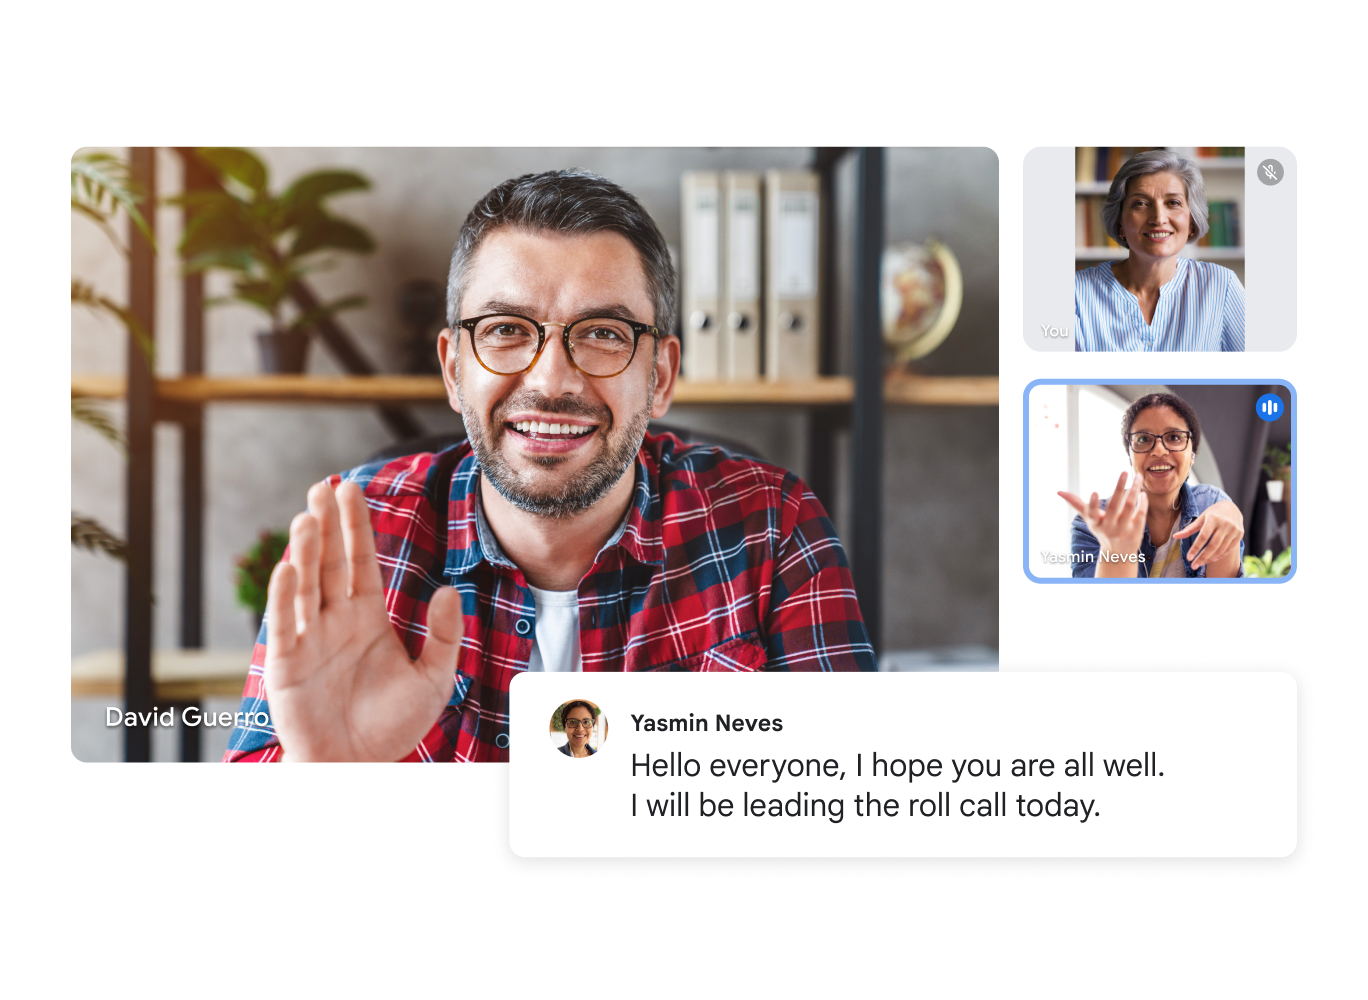 Google Meet-videosamtal som visar tre användare med en livetranskription med texten ”Hej allesammans, jag hoppas att ni har det bra. Jag leder genomgången i dag.” 